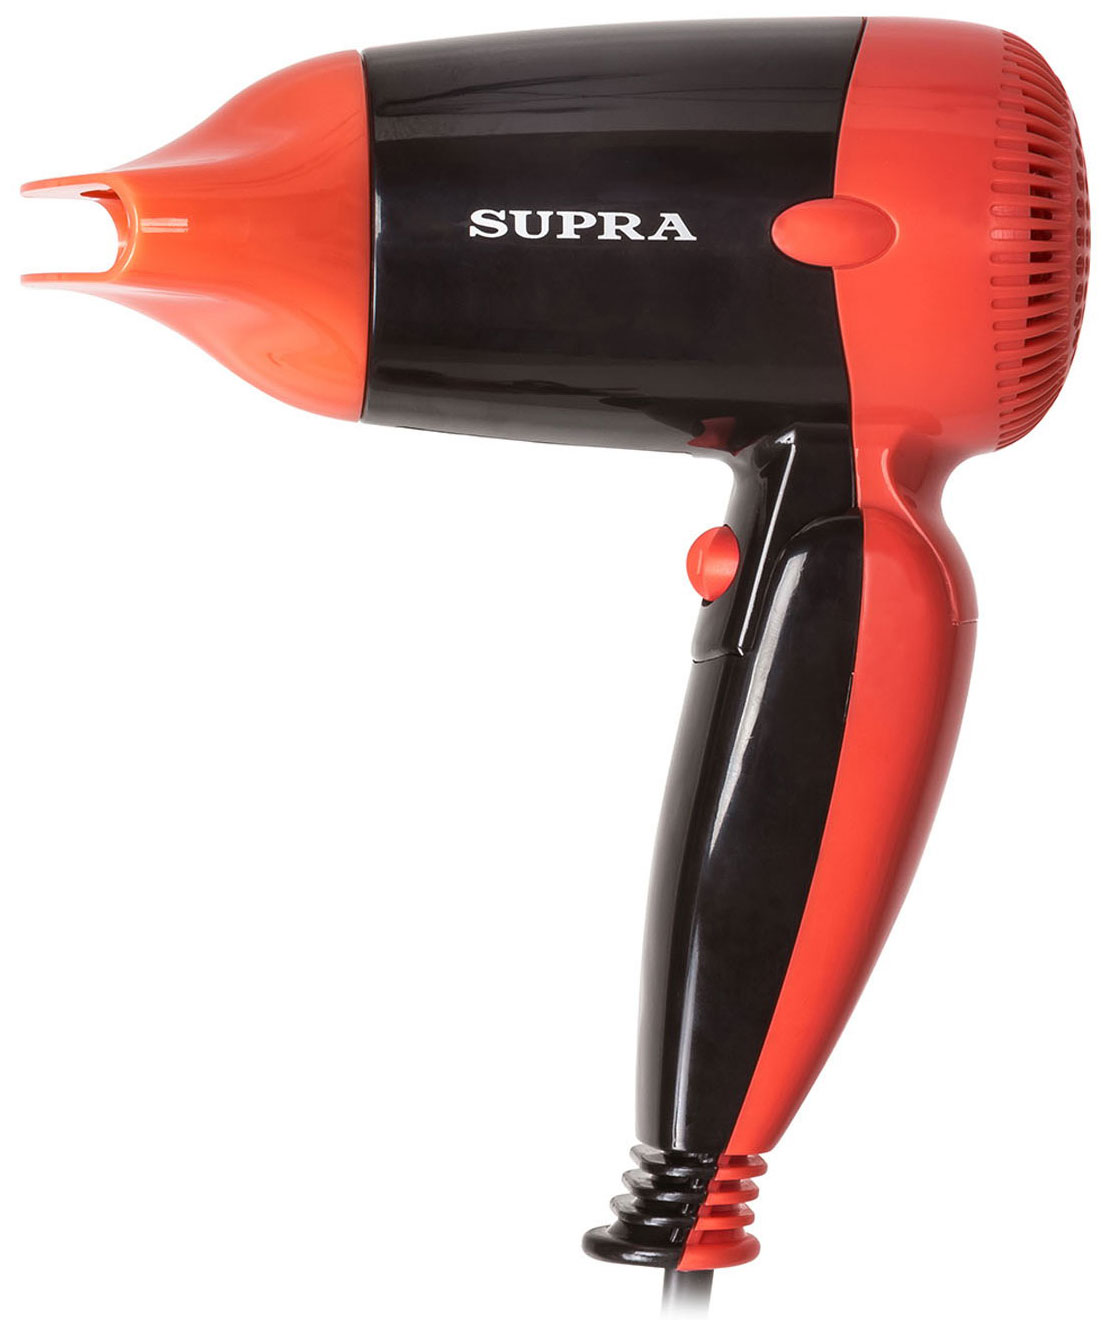 Фен Supra PHS-1404S фен supra phs 1404s черный красный